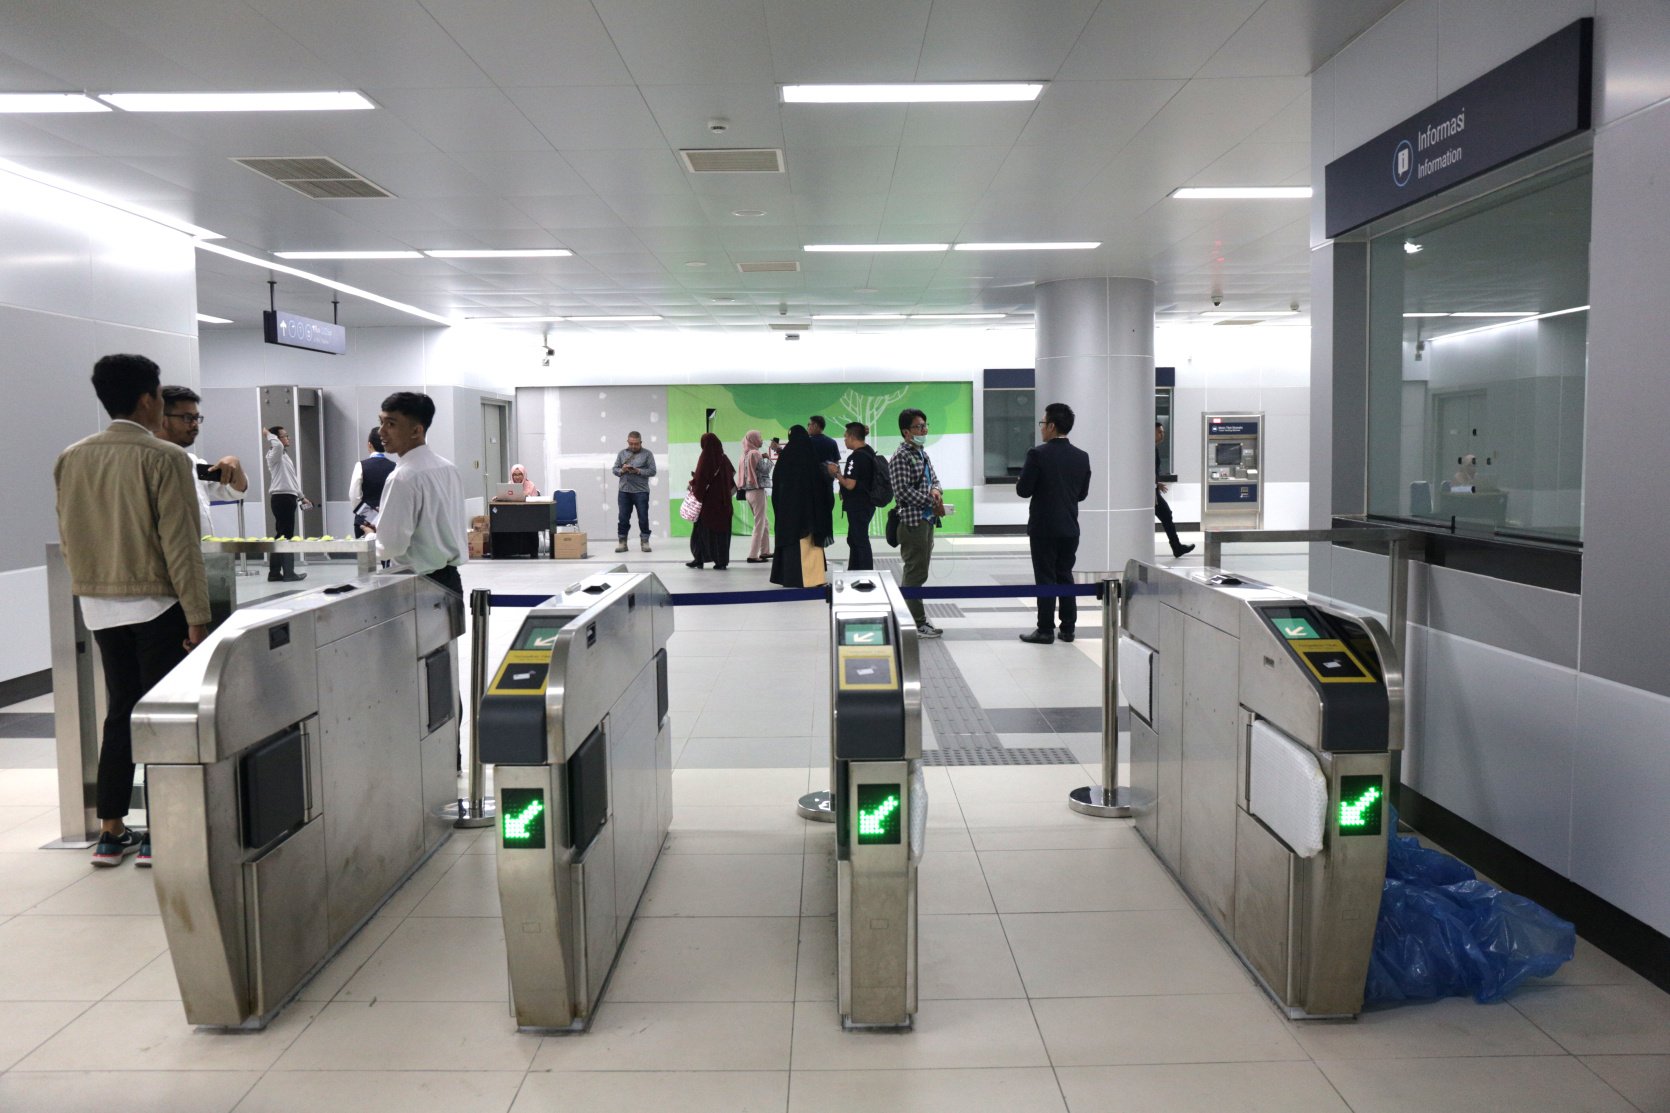 Moda raya terpadu (Mass Rapid Transit/MRT) Jakarta resmi memulai operasional terbatas dalam rangka uji coba publik pada hari ini, Selasa (12/3). Pada operasi hari ini, MRT Jakarta akan mengangkut sebanyak 4 ribu penumpang mulai pukul 08.00 sampai 16.00 WIB.